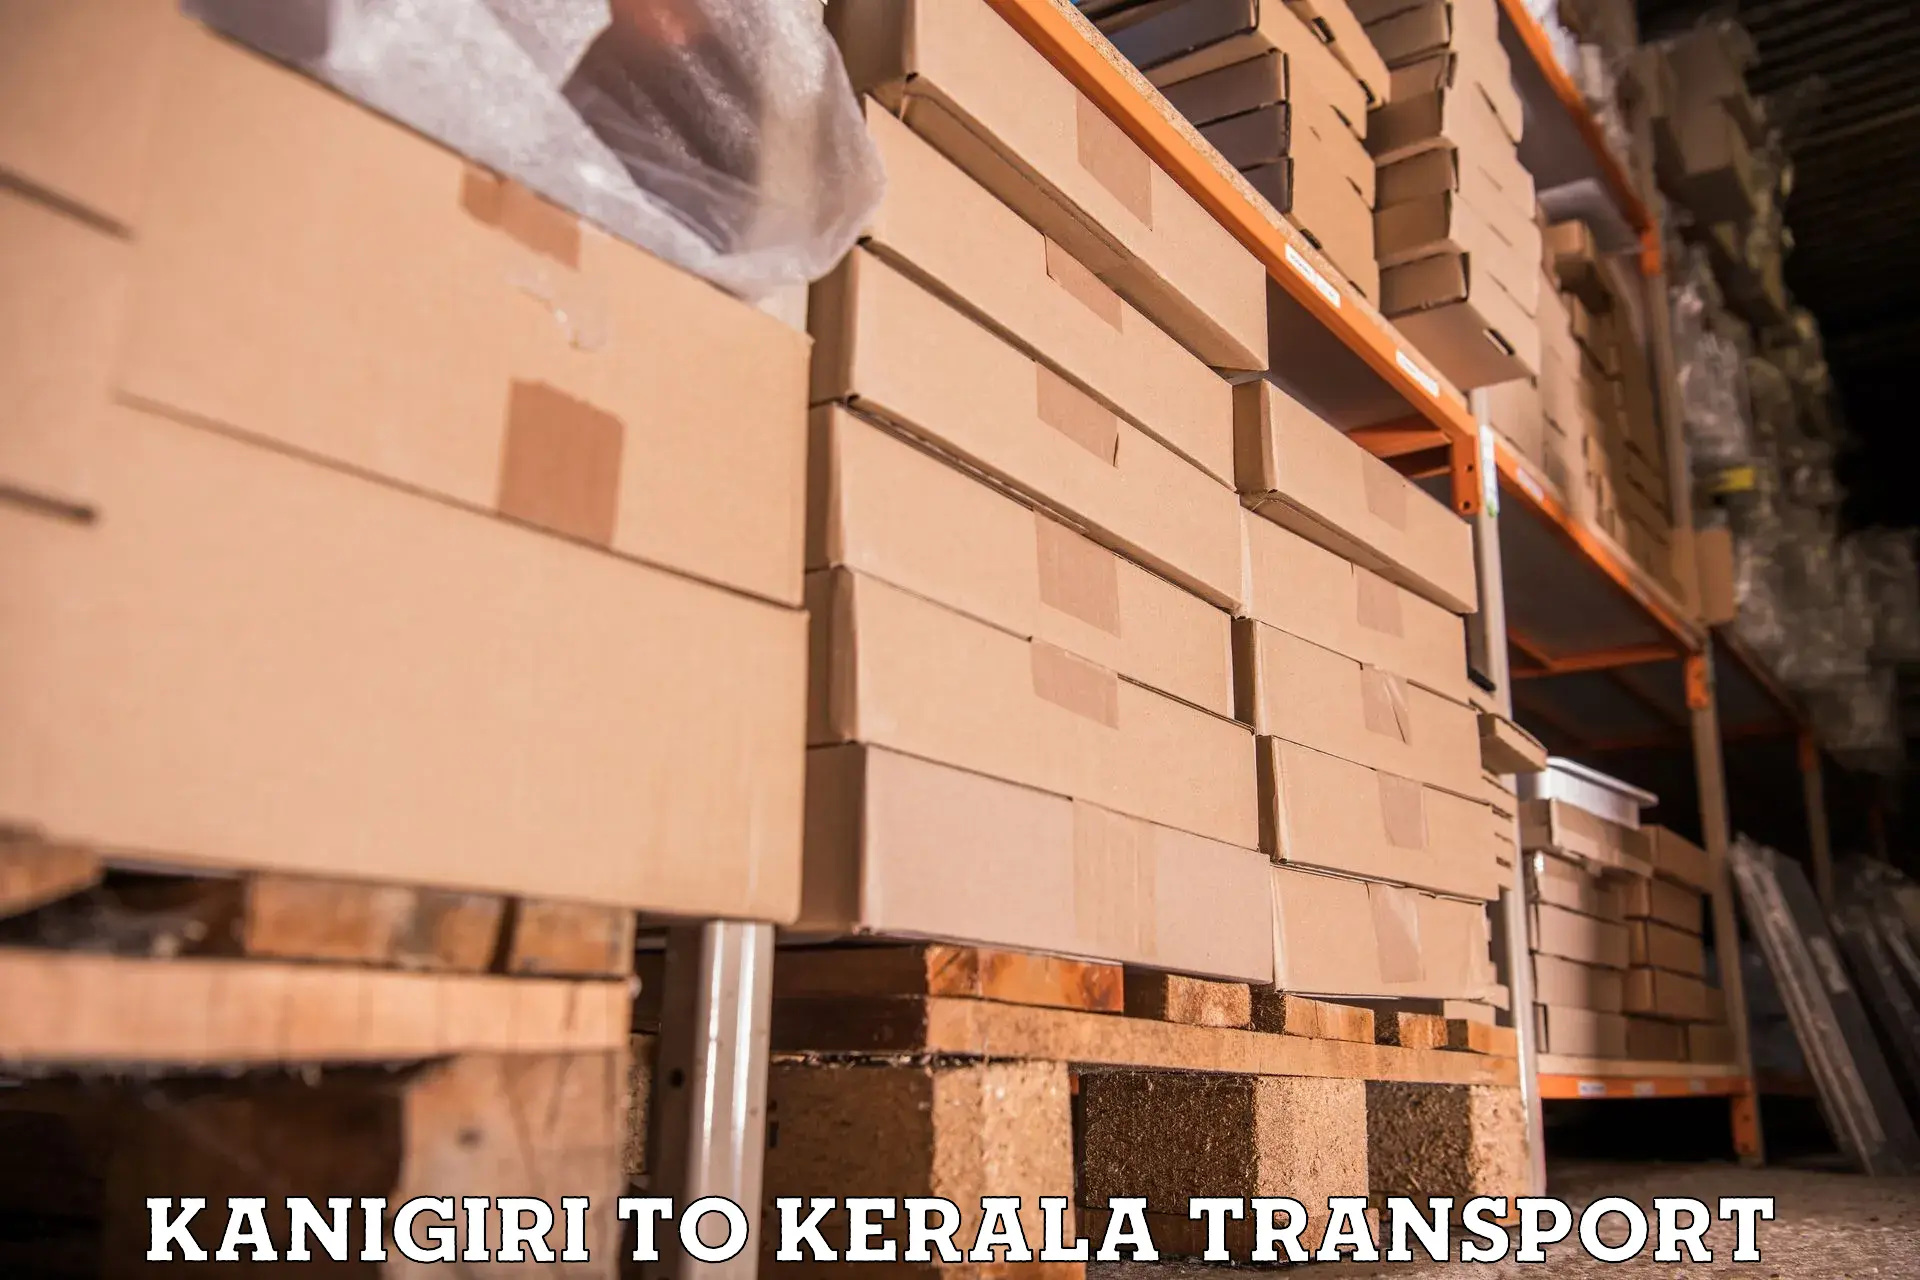 Transport in sharing Kanigiri to Kakkur